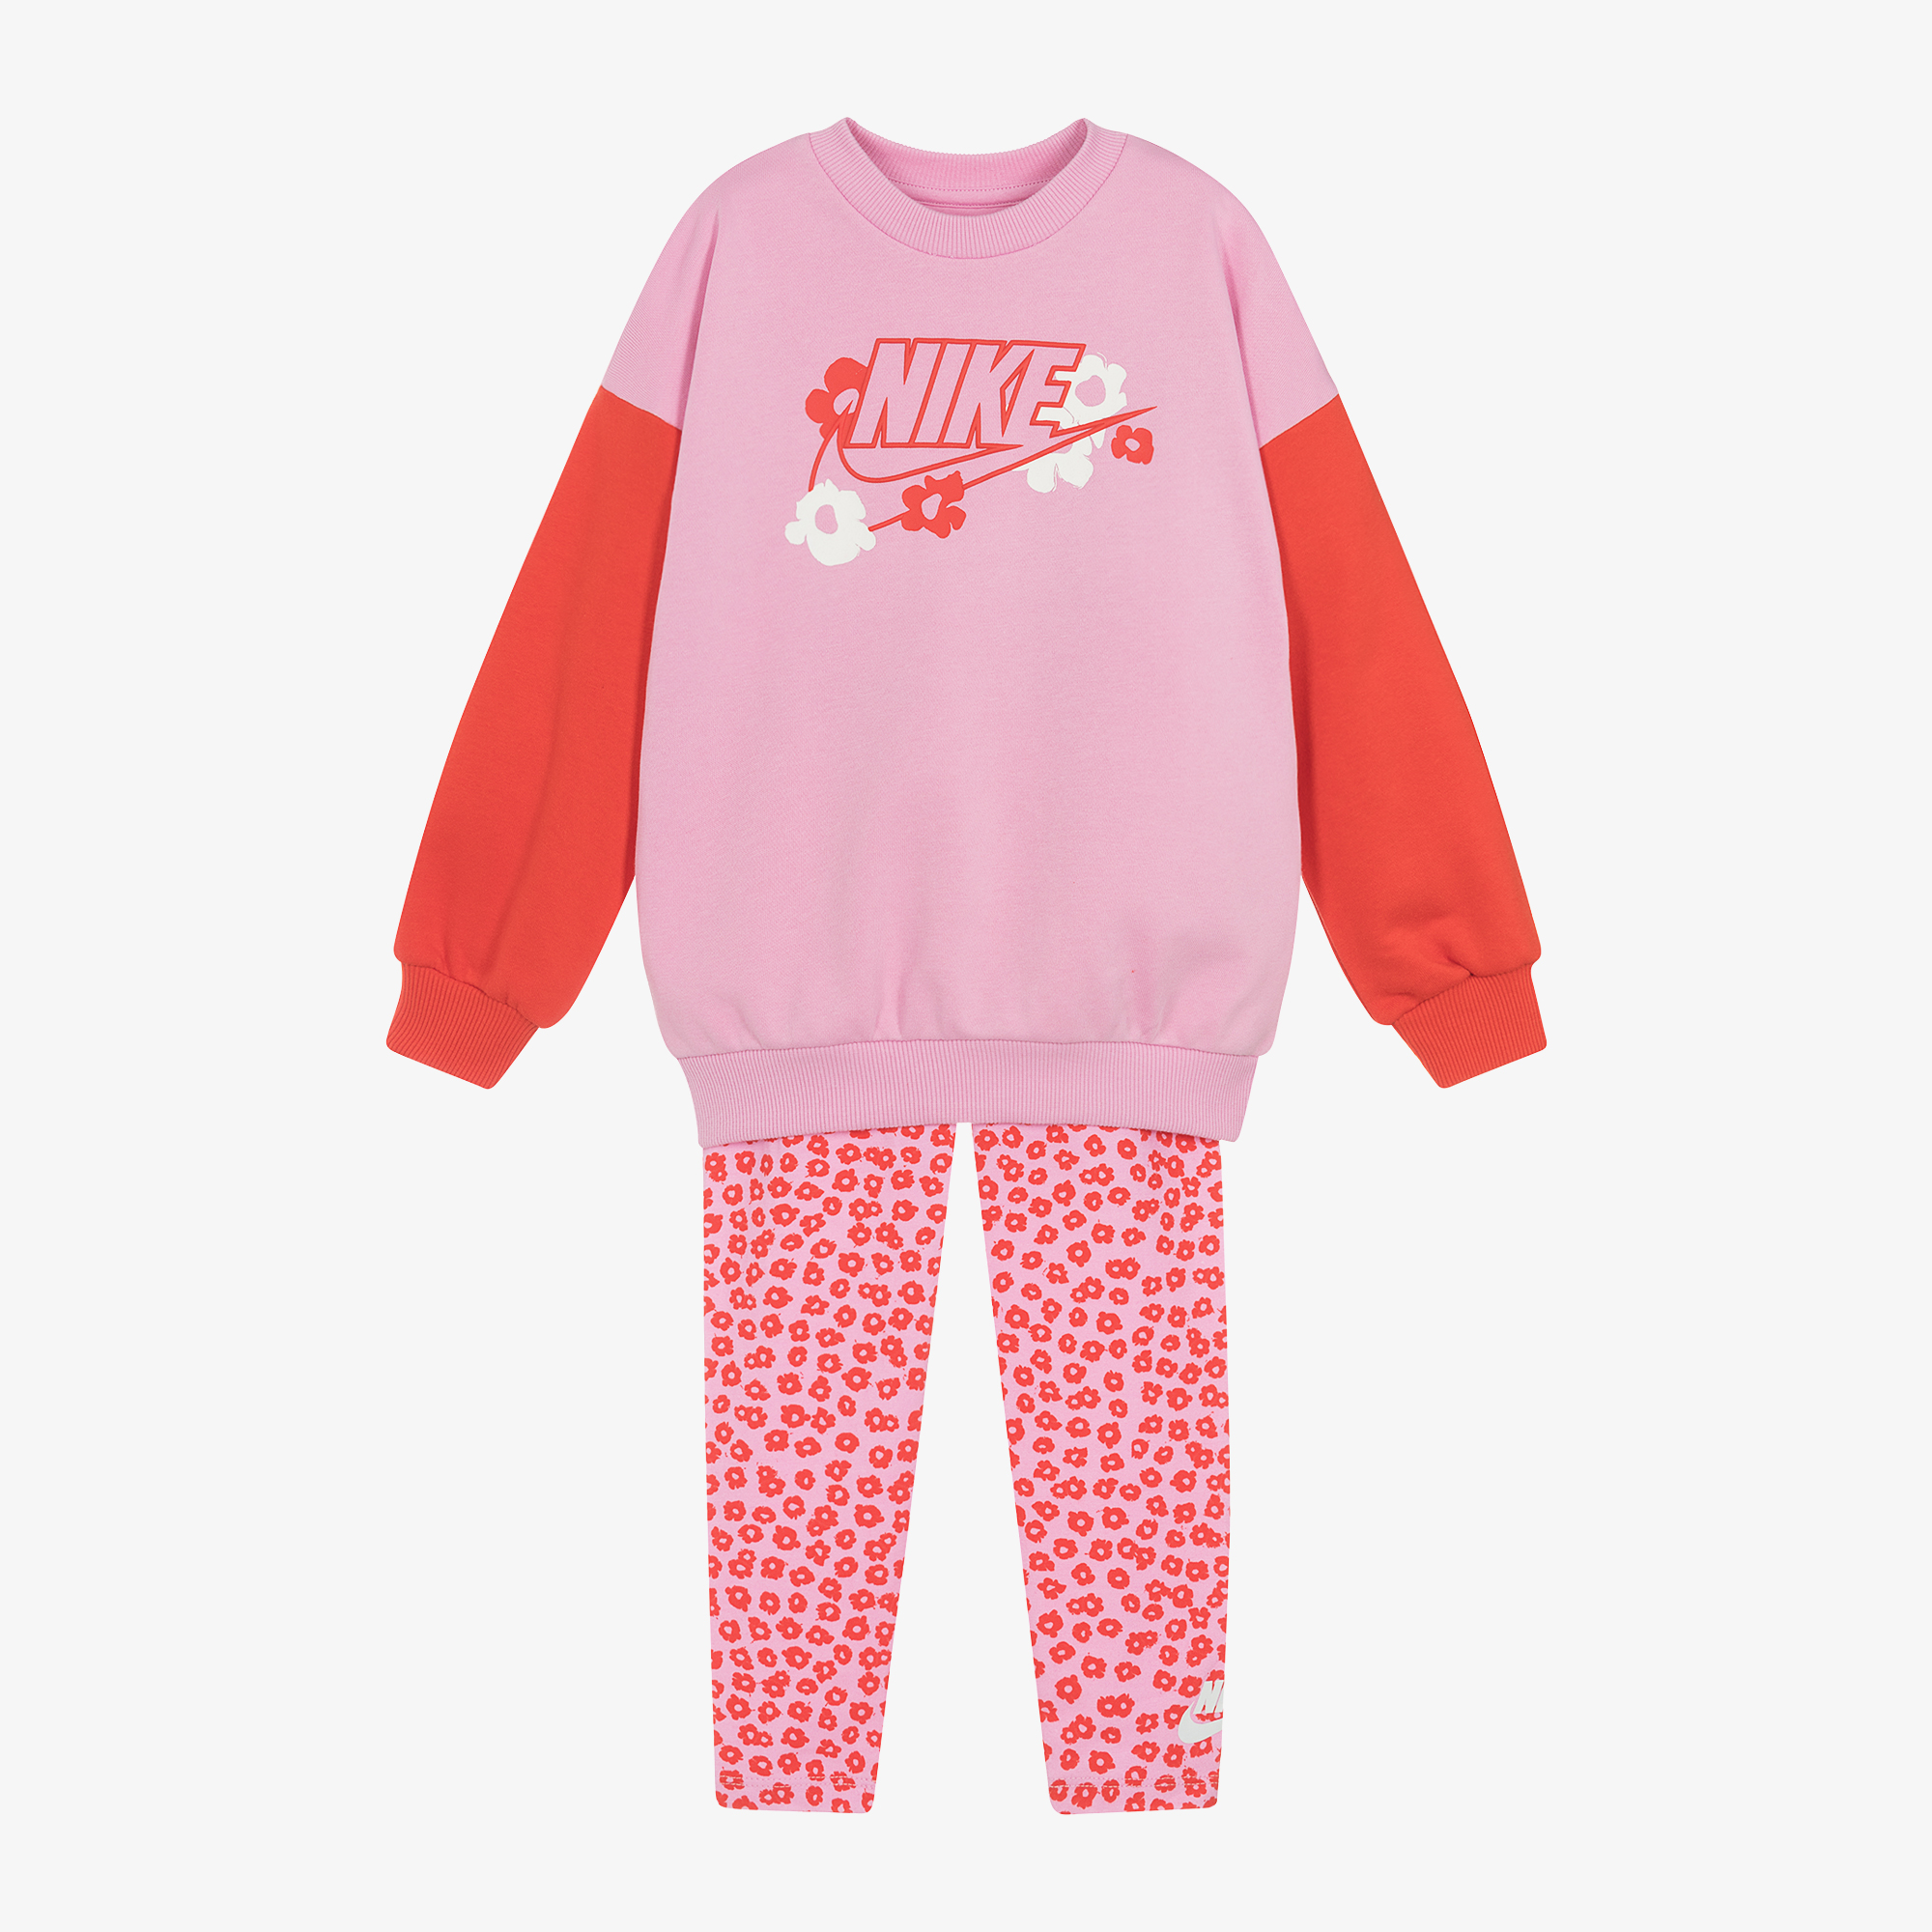 Nike - Girls Pink Floral Cotton Leggings Set